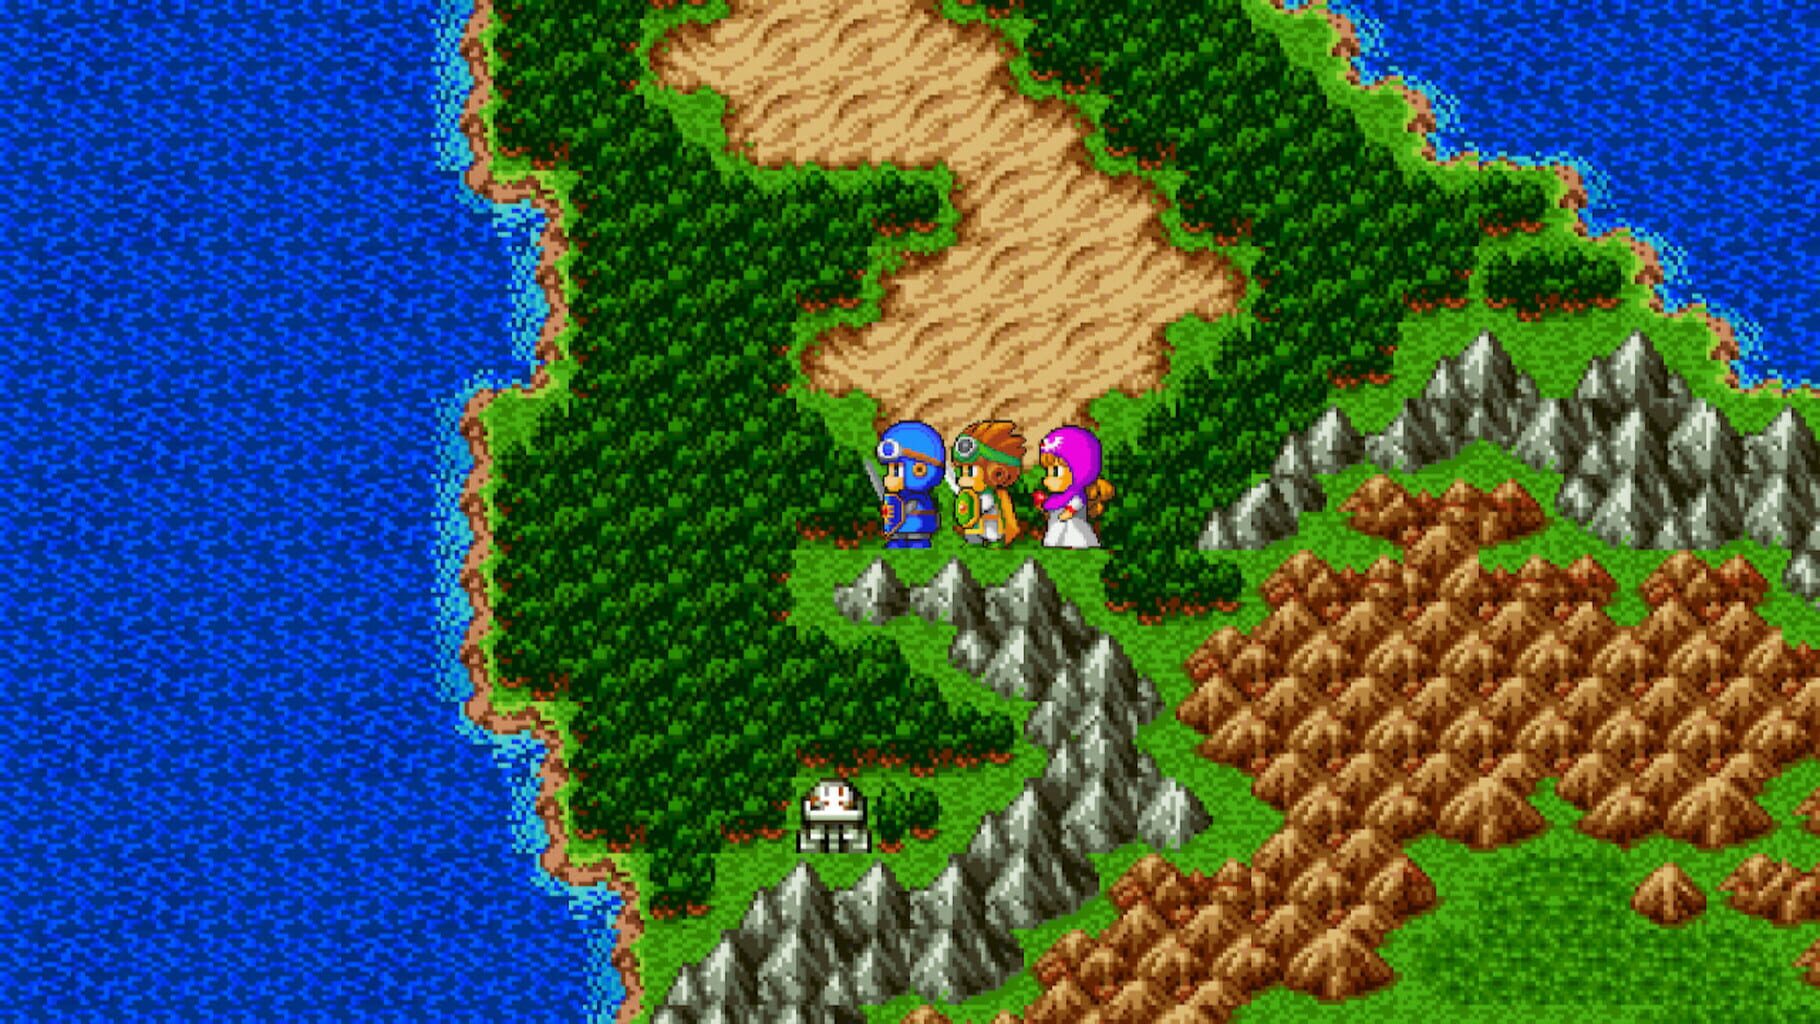 Captura de pantalla - Dragon Quest II: Luminaries of the Legendary Line